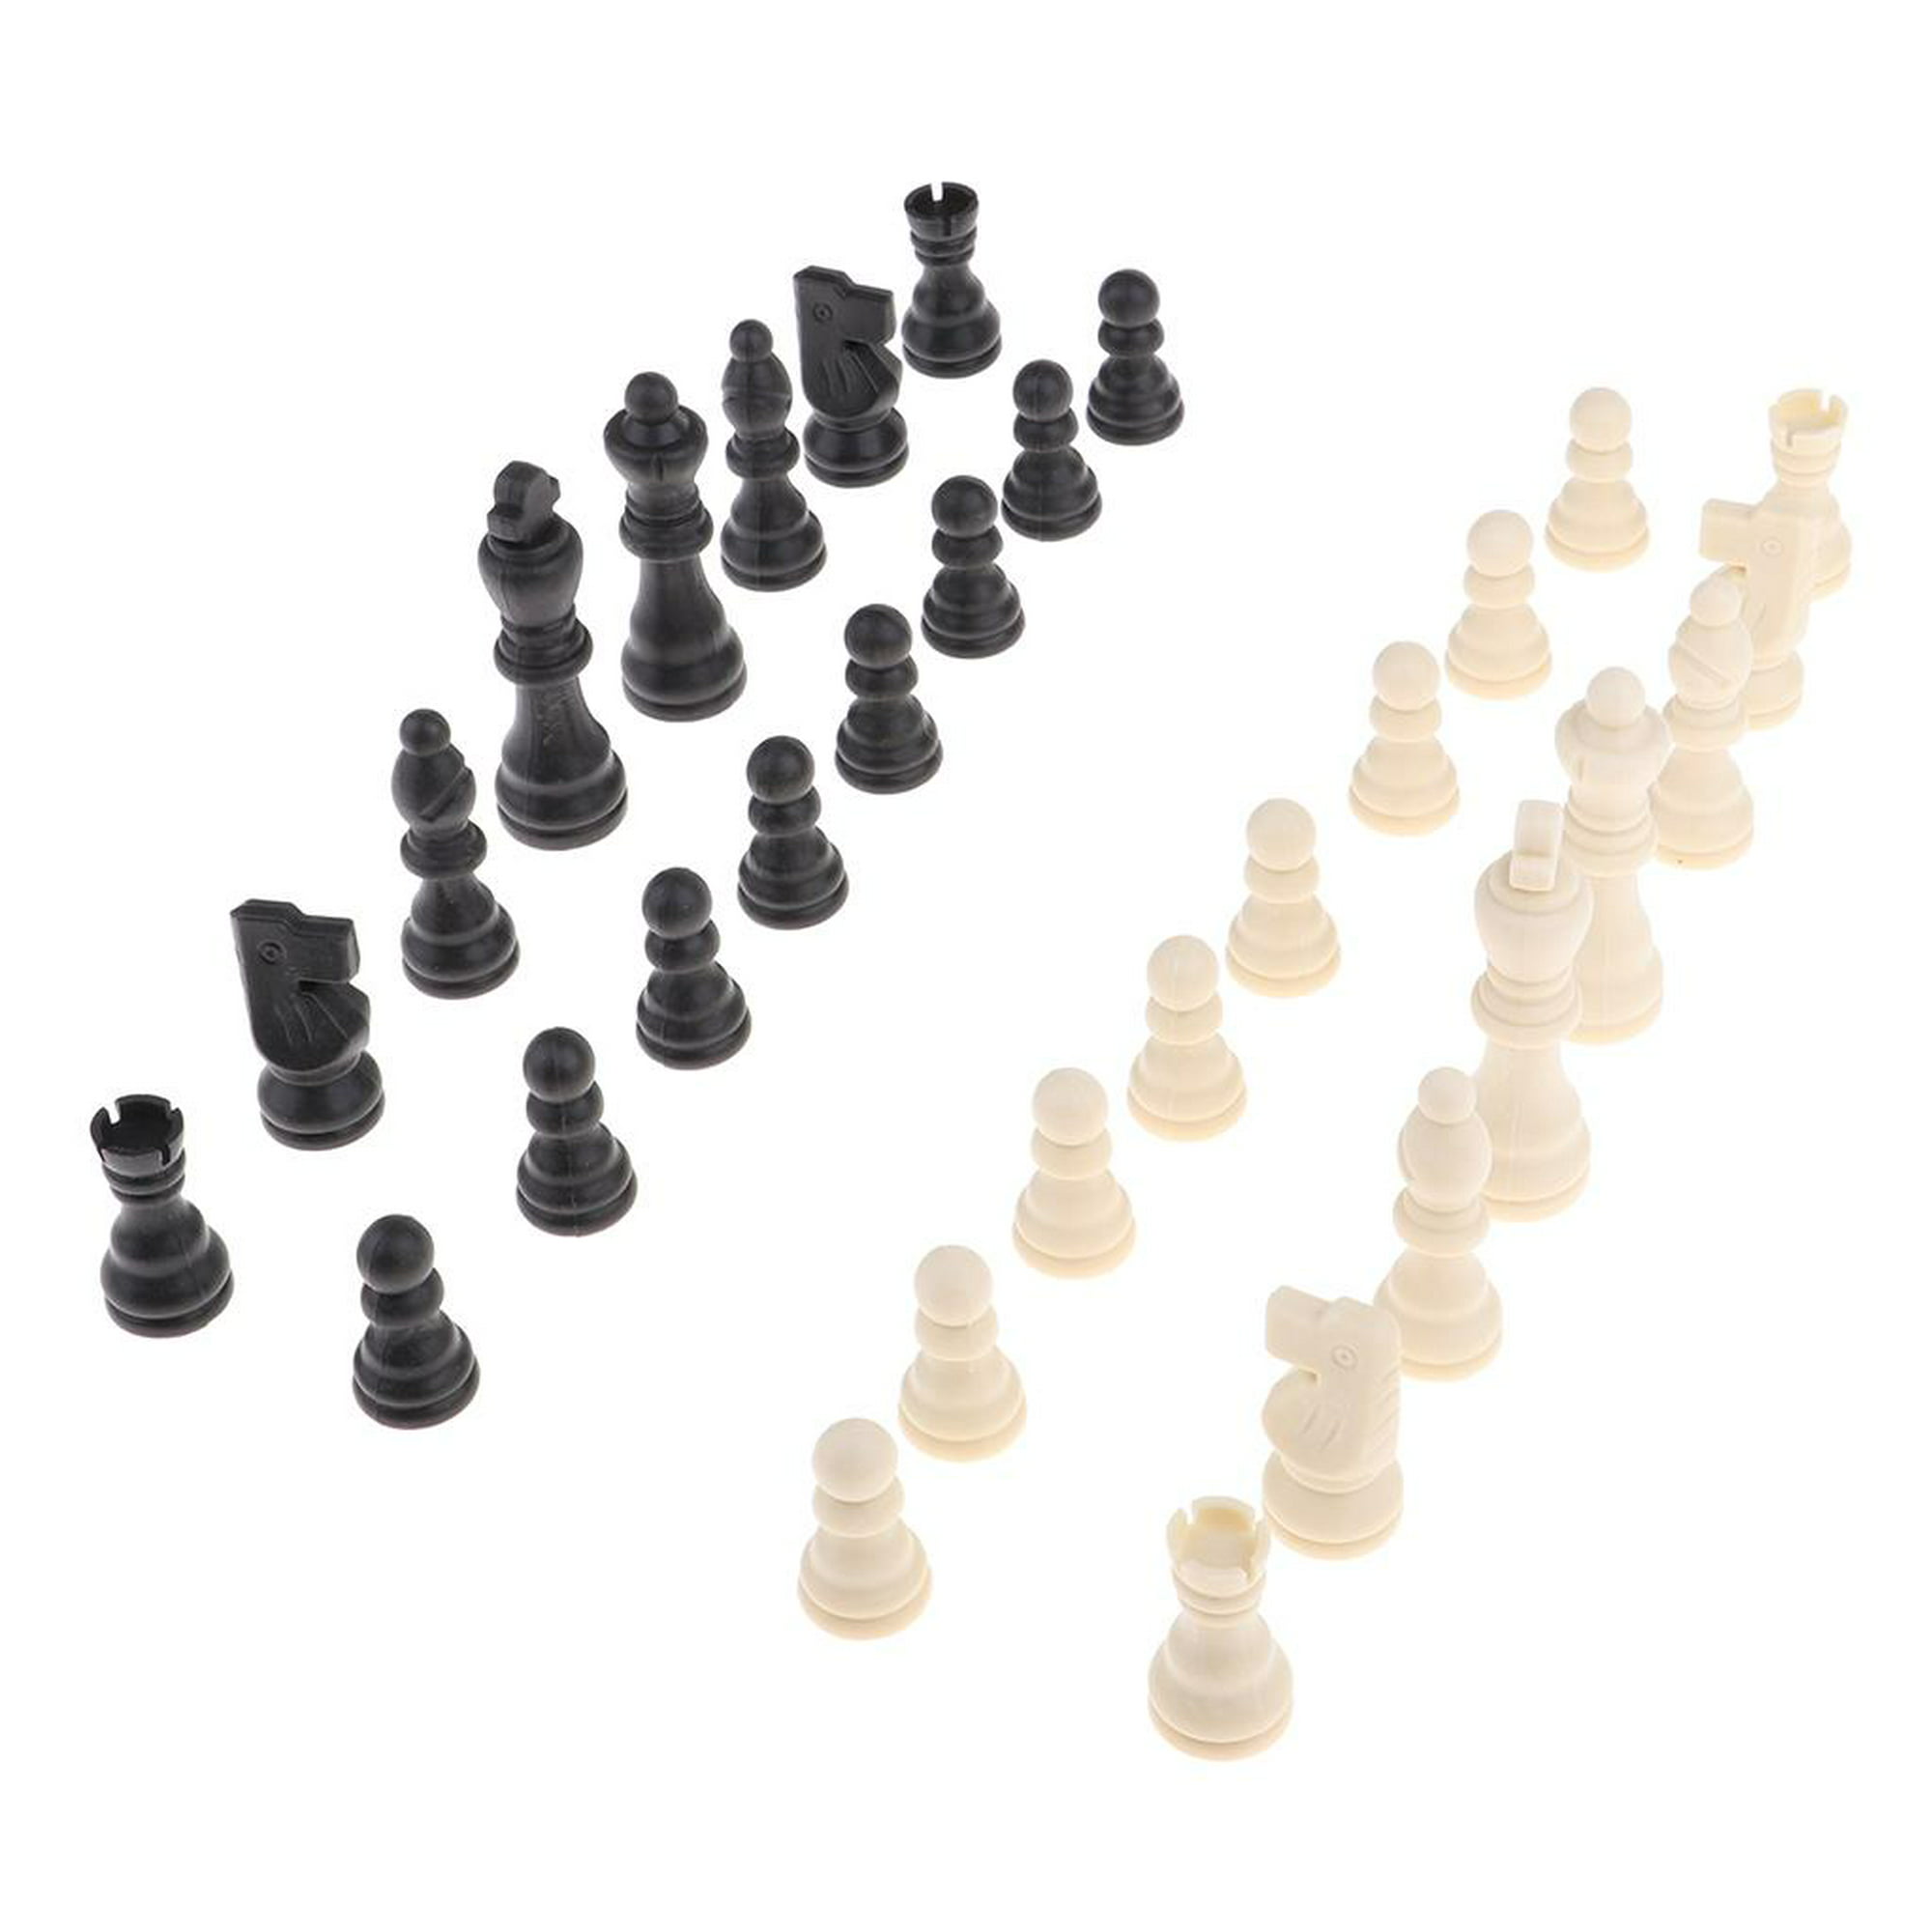 AJEDREZ. Juega al ajedrez contra ordenador gratis online en Minijuegos